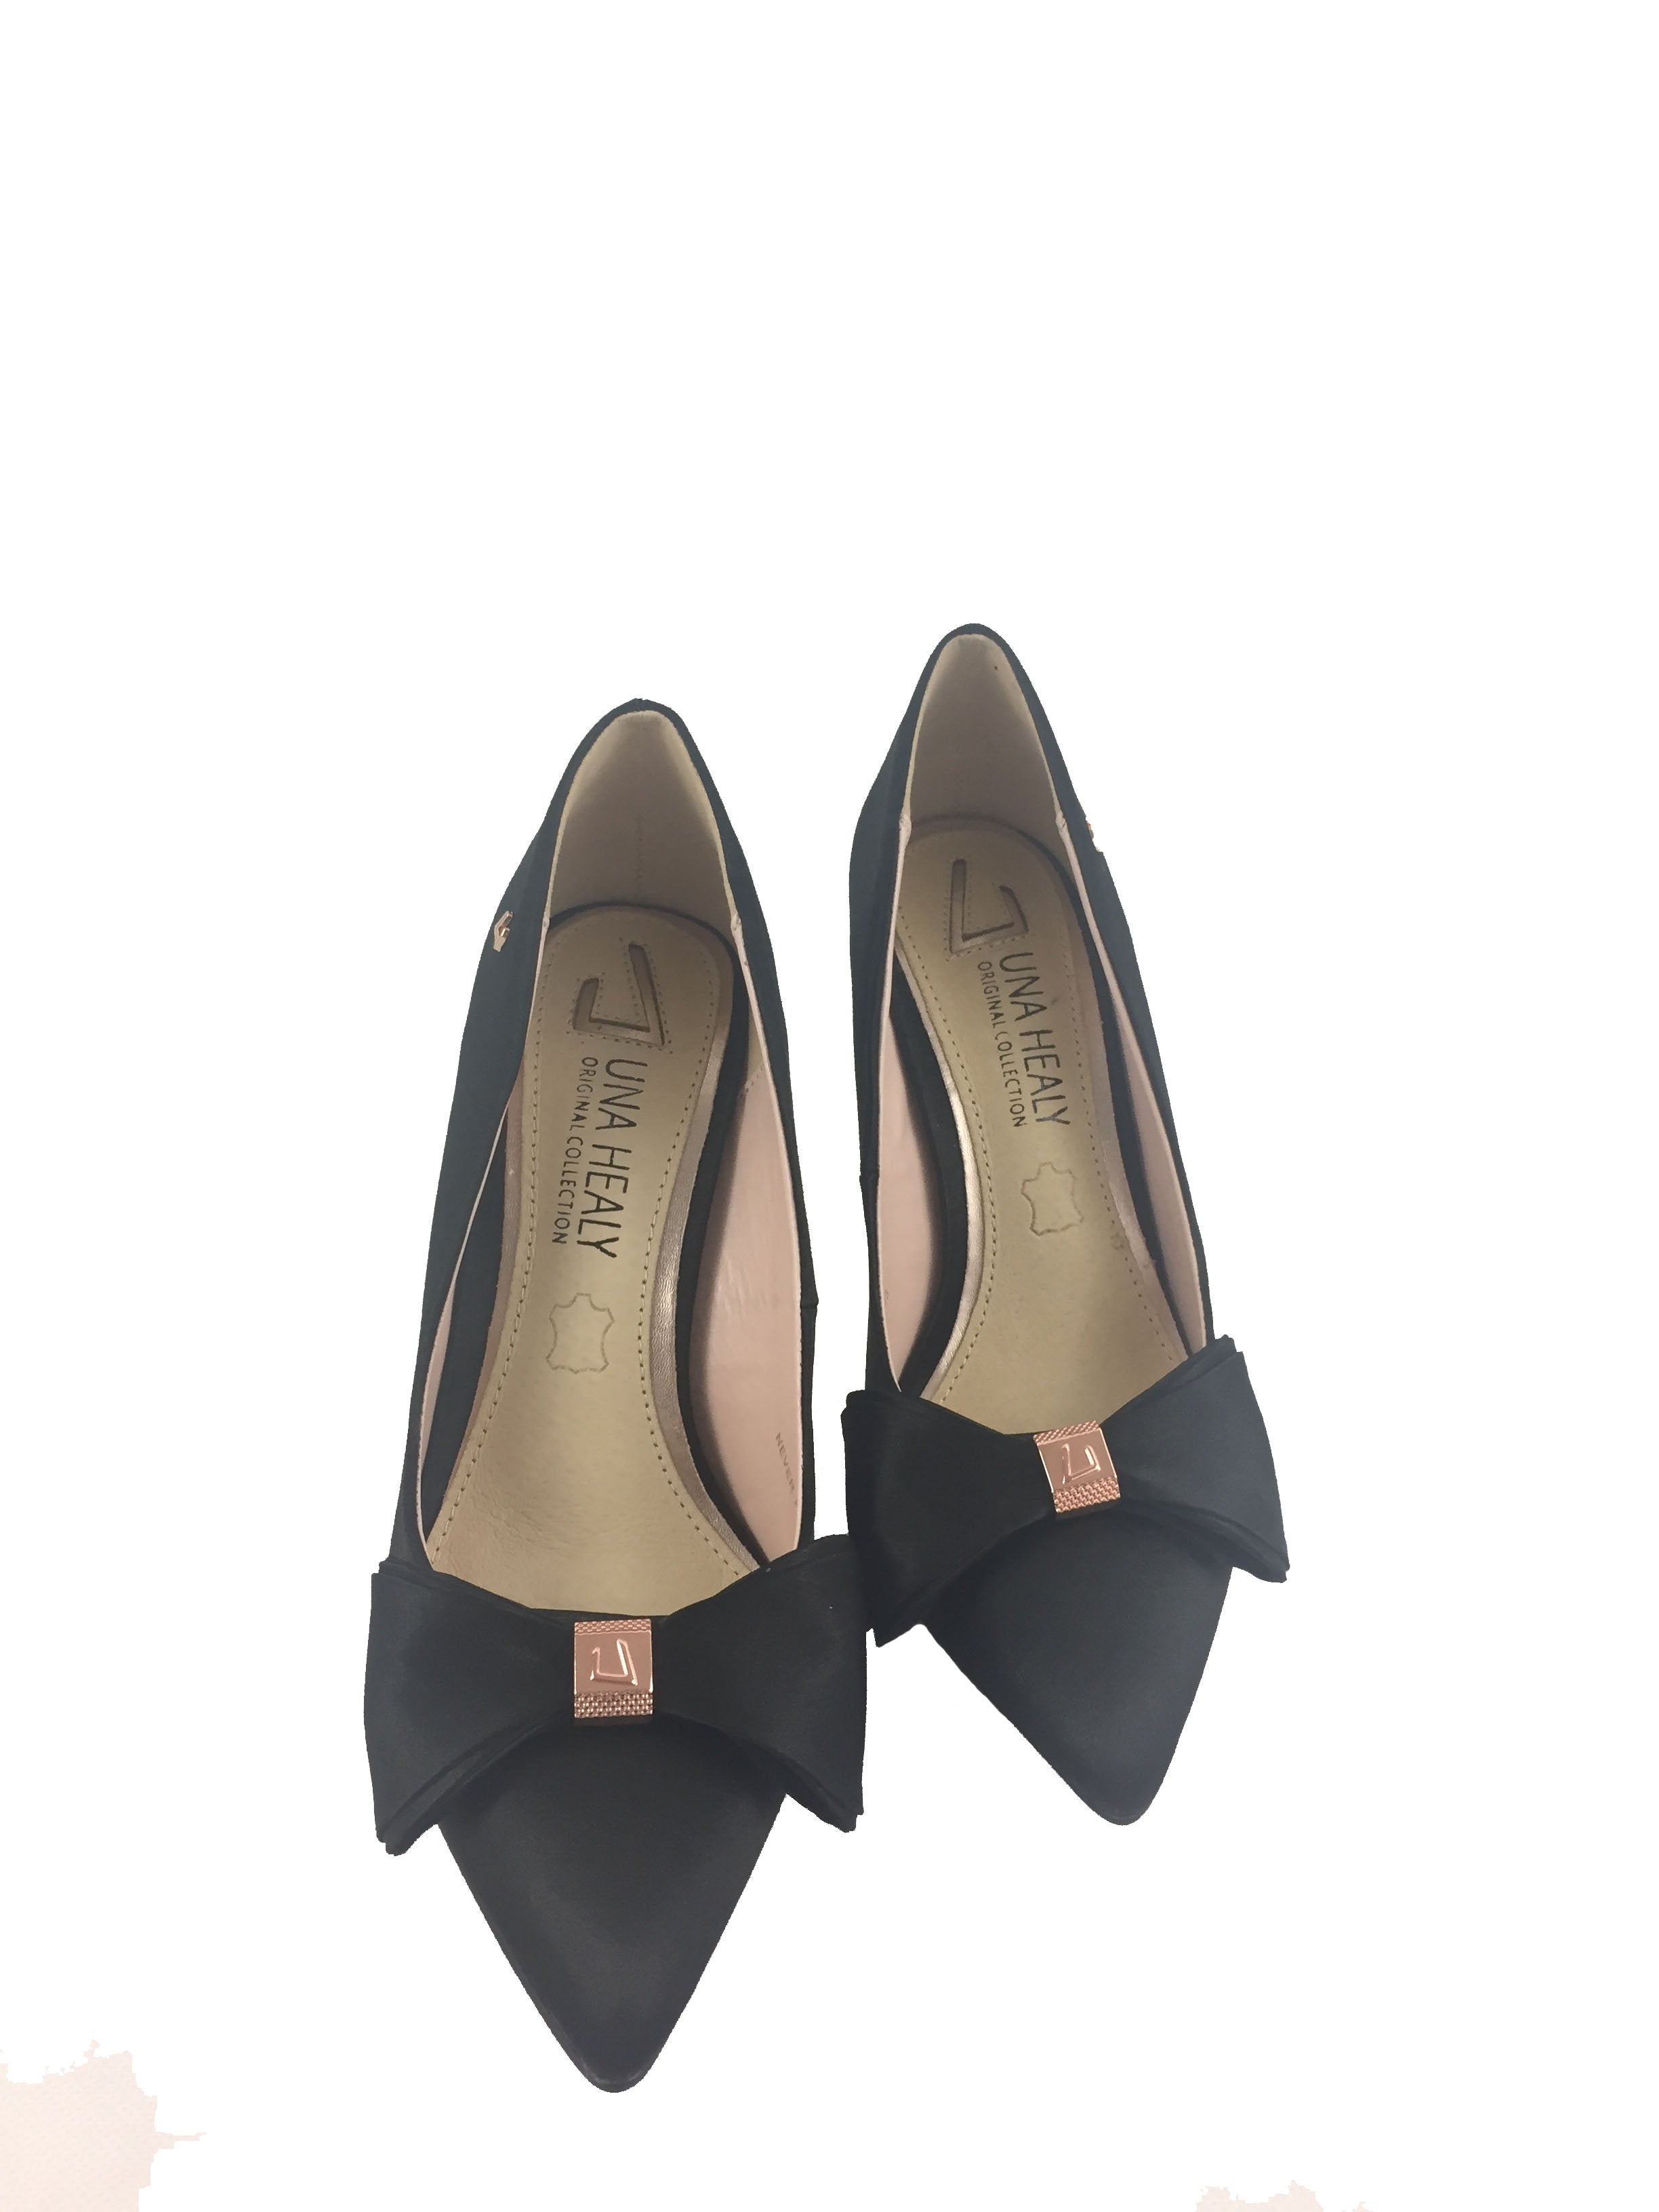 black satin court shoes